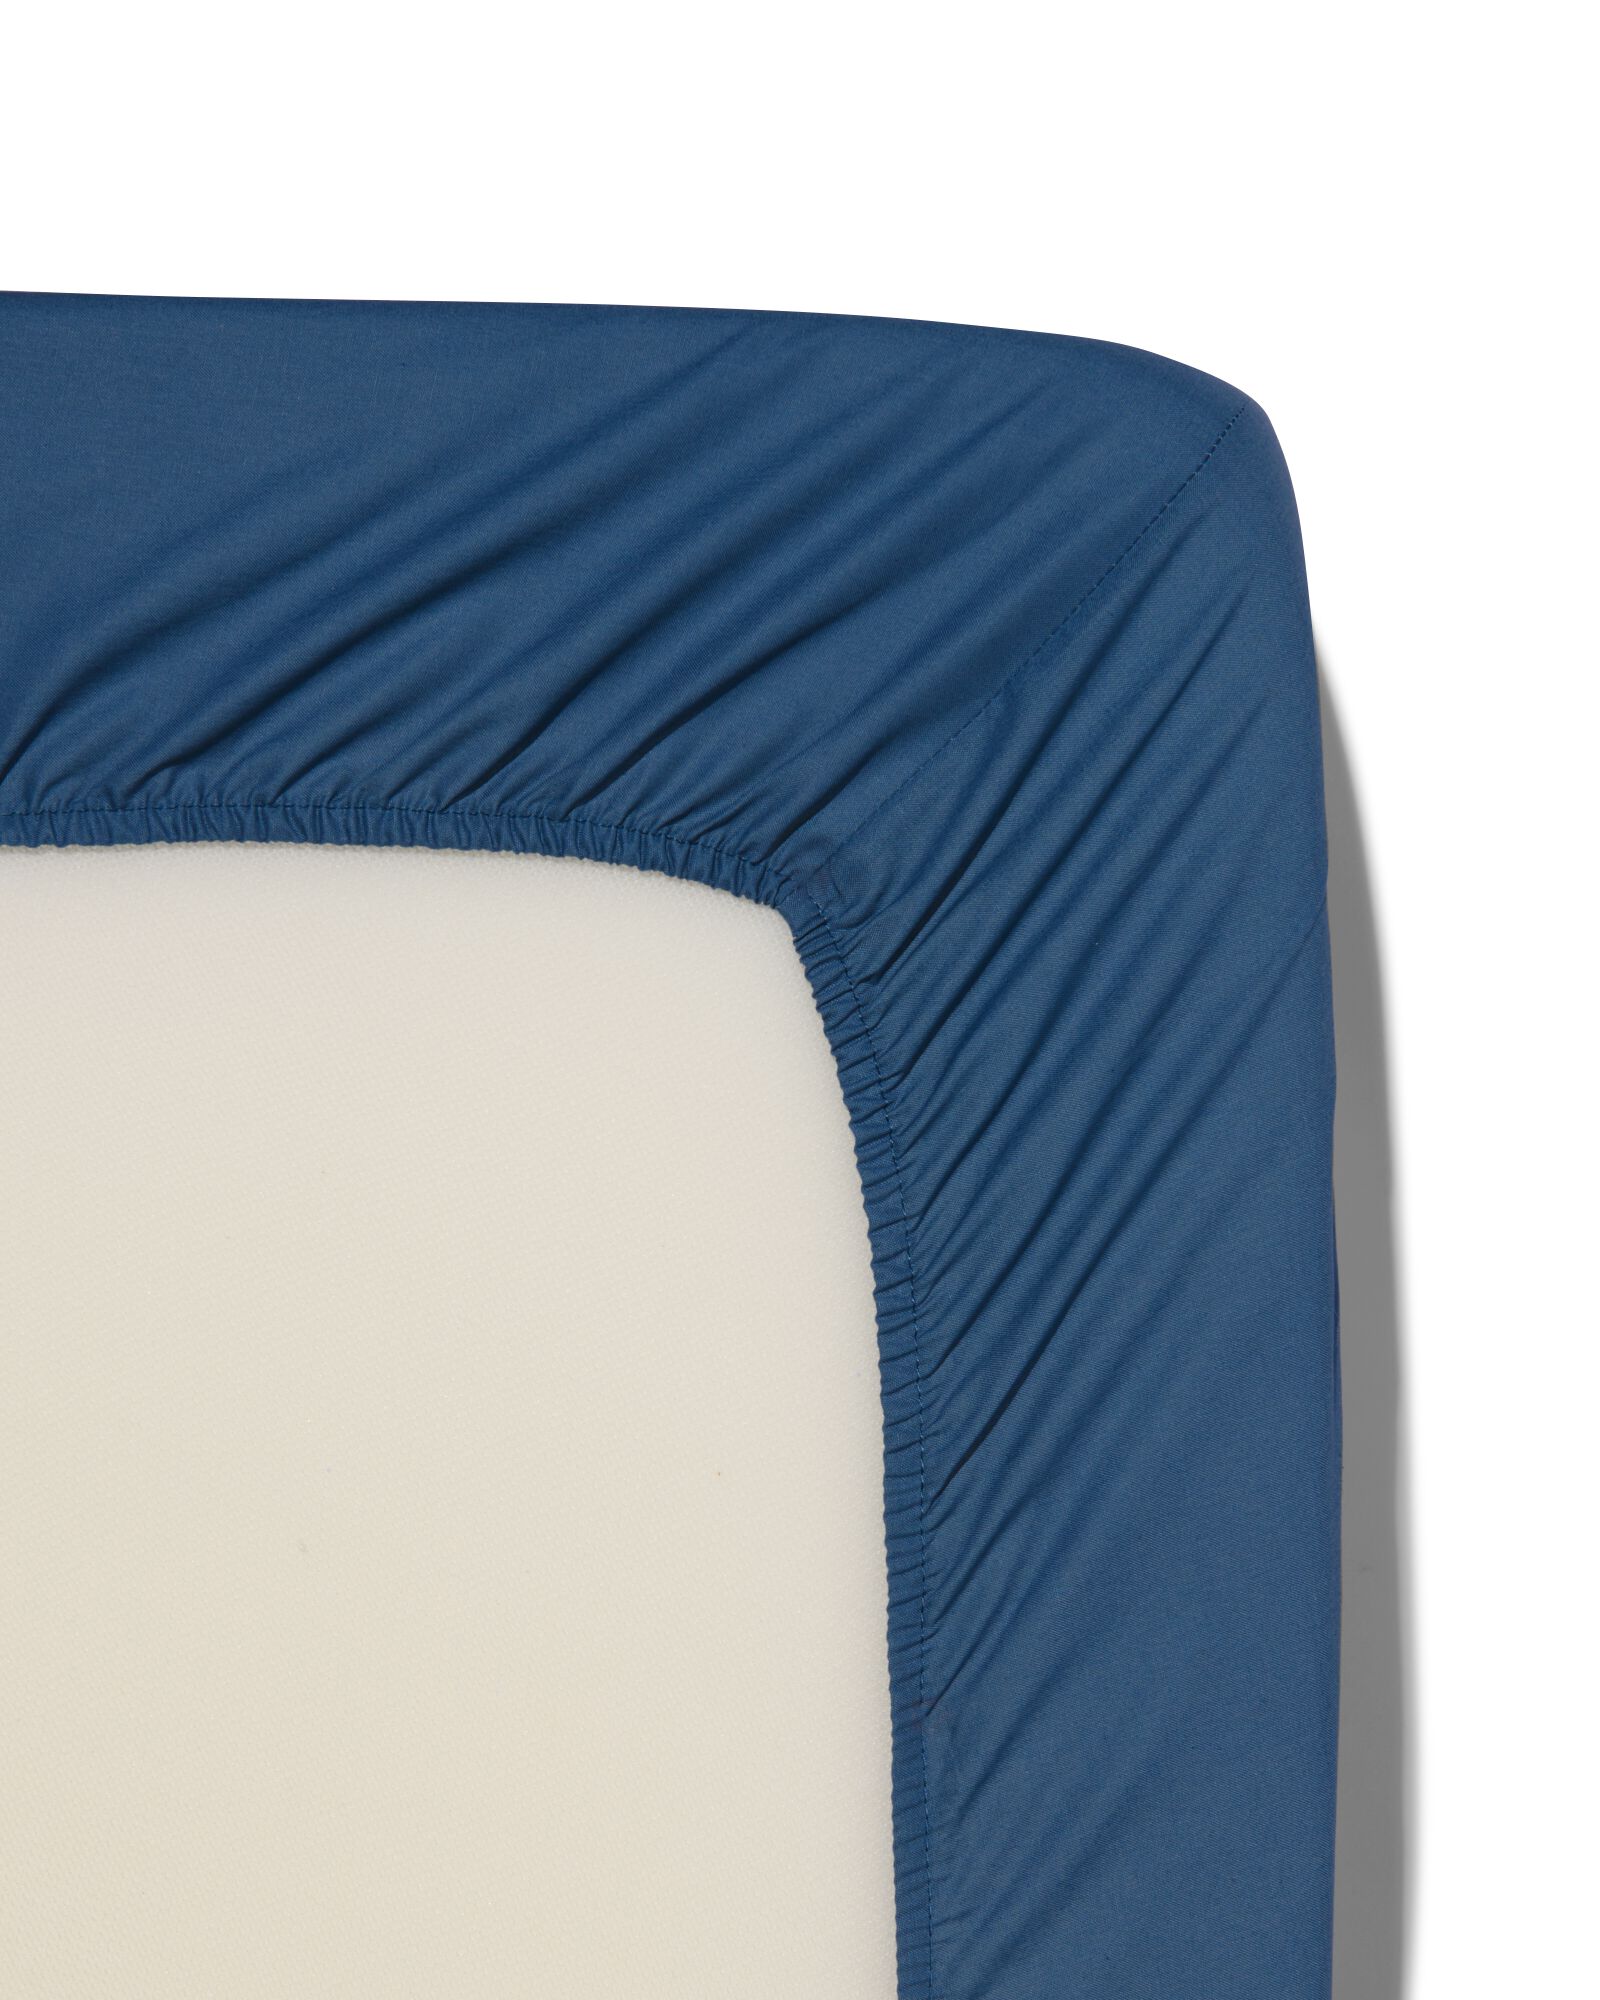 Spannbettlaken, Soft Cotton, 90 x 200 cm, blau - 5190050 - HEMA